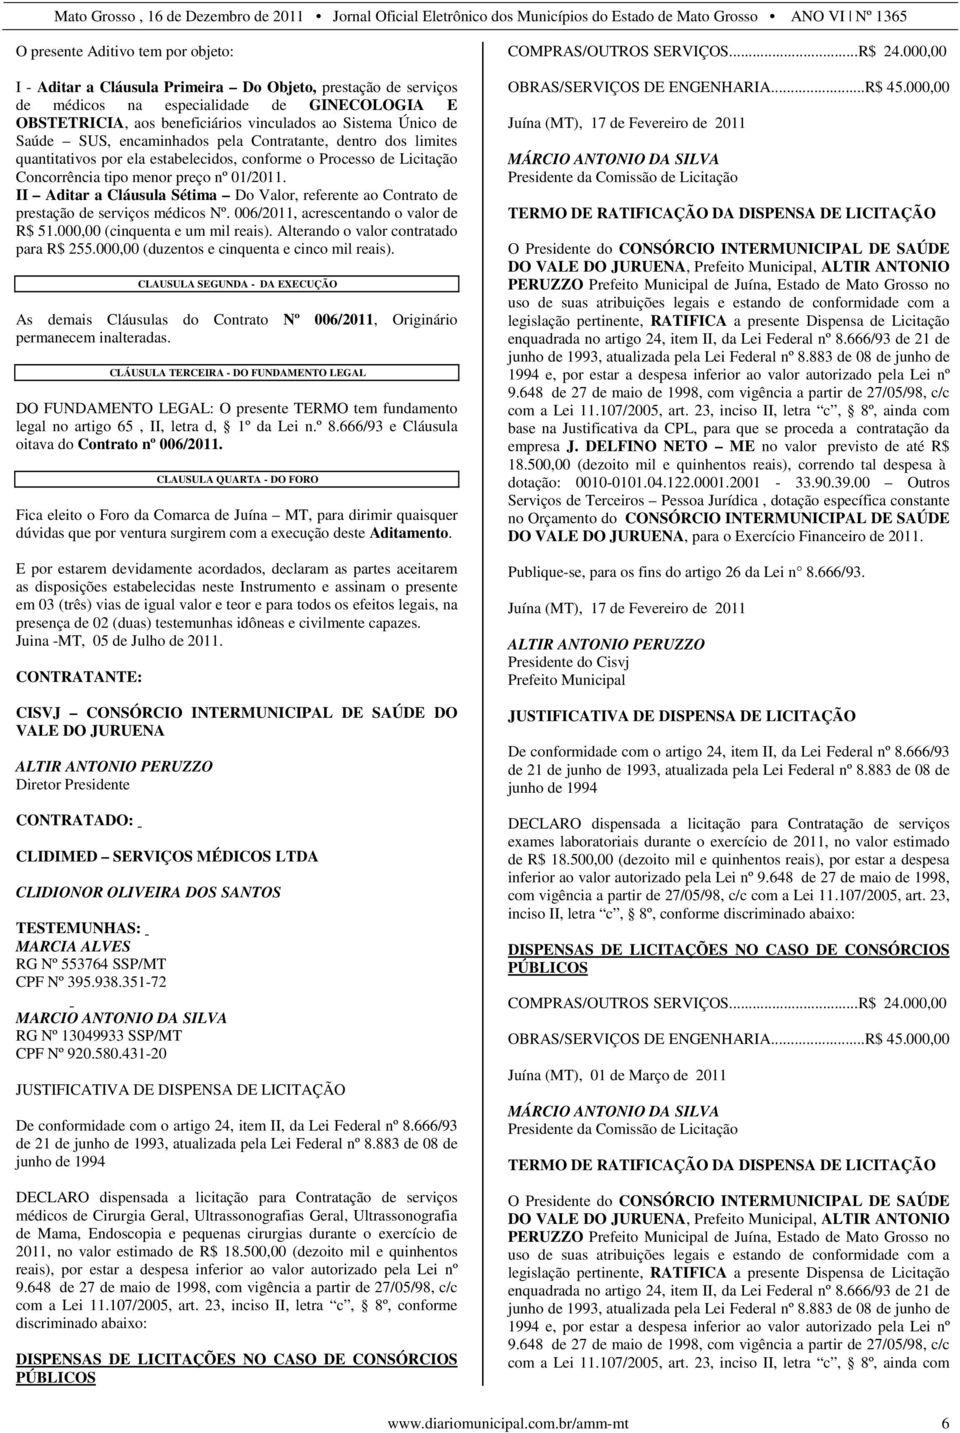 II Aditar a Cláusula Sétima Do Valor, referente ao Contrato de prestação de serviços médicos Nº. 006/2011, acrescentando o valor de R$ 51.000,00 (cinquenta e um mil reais).